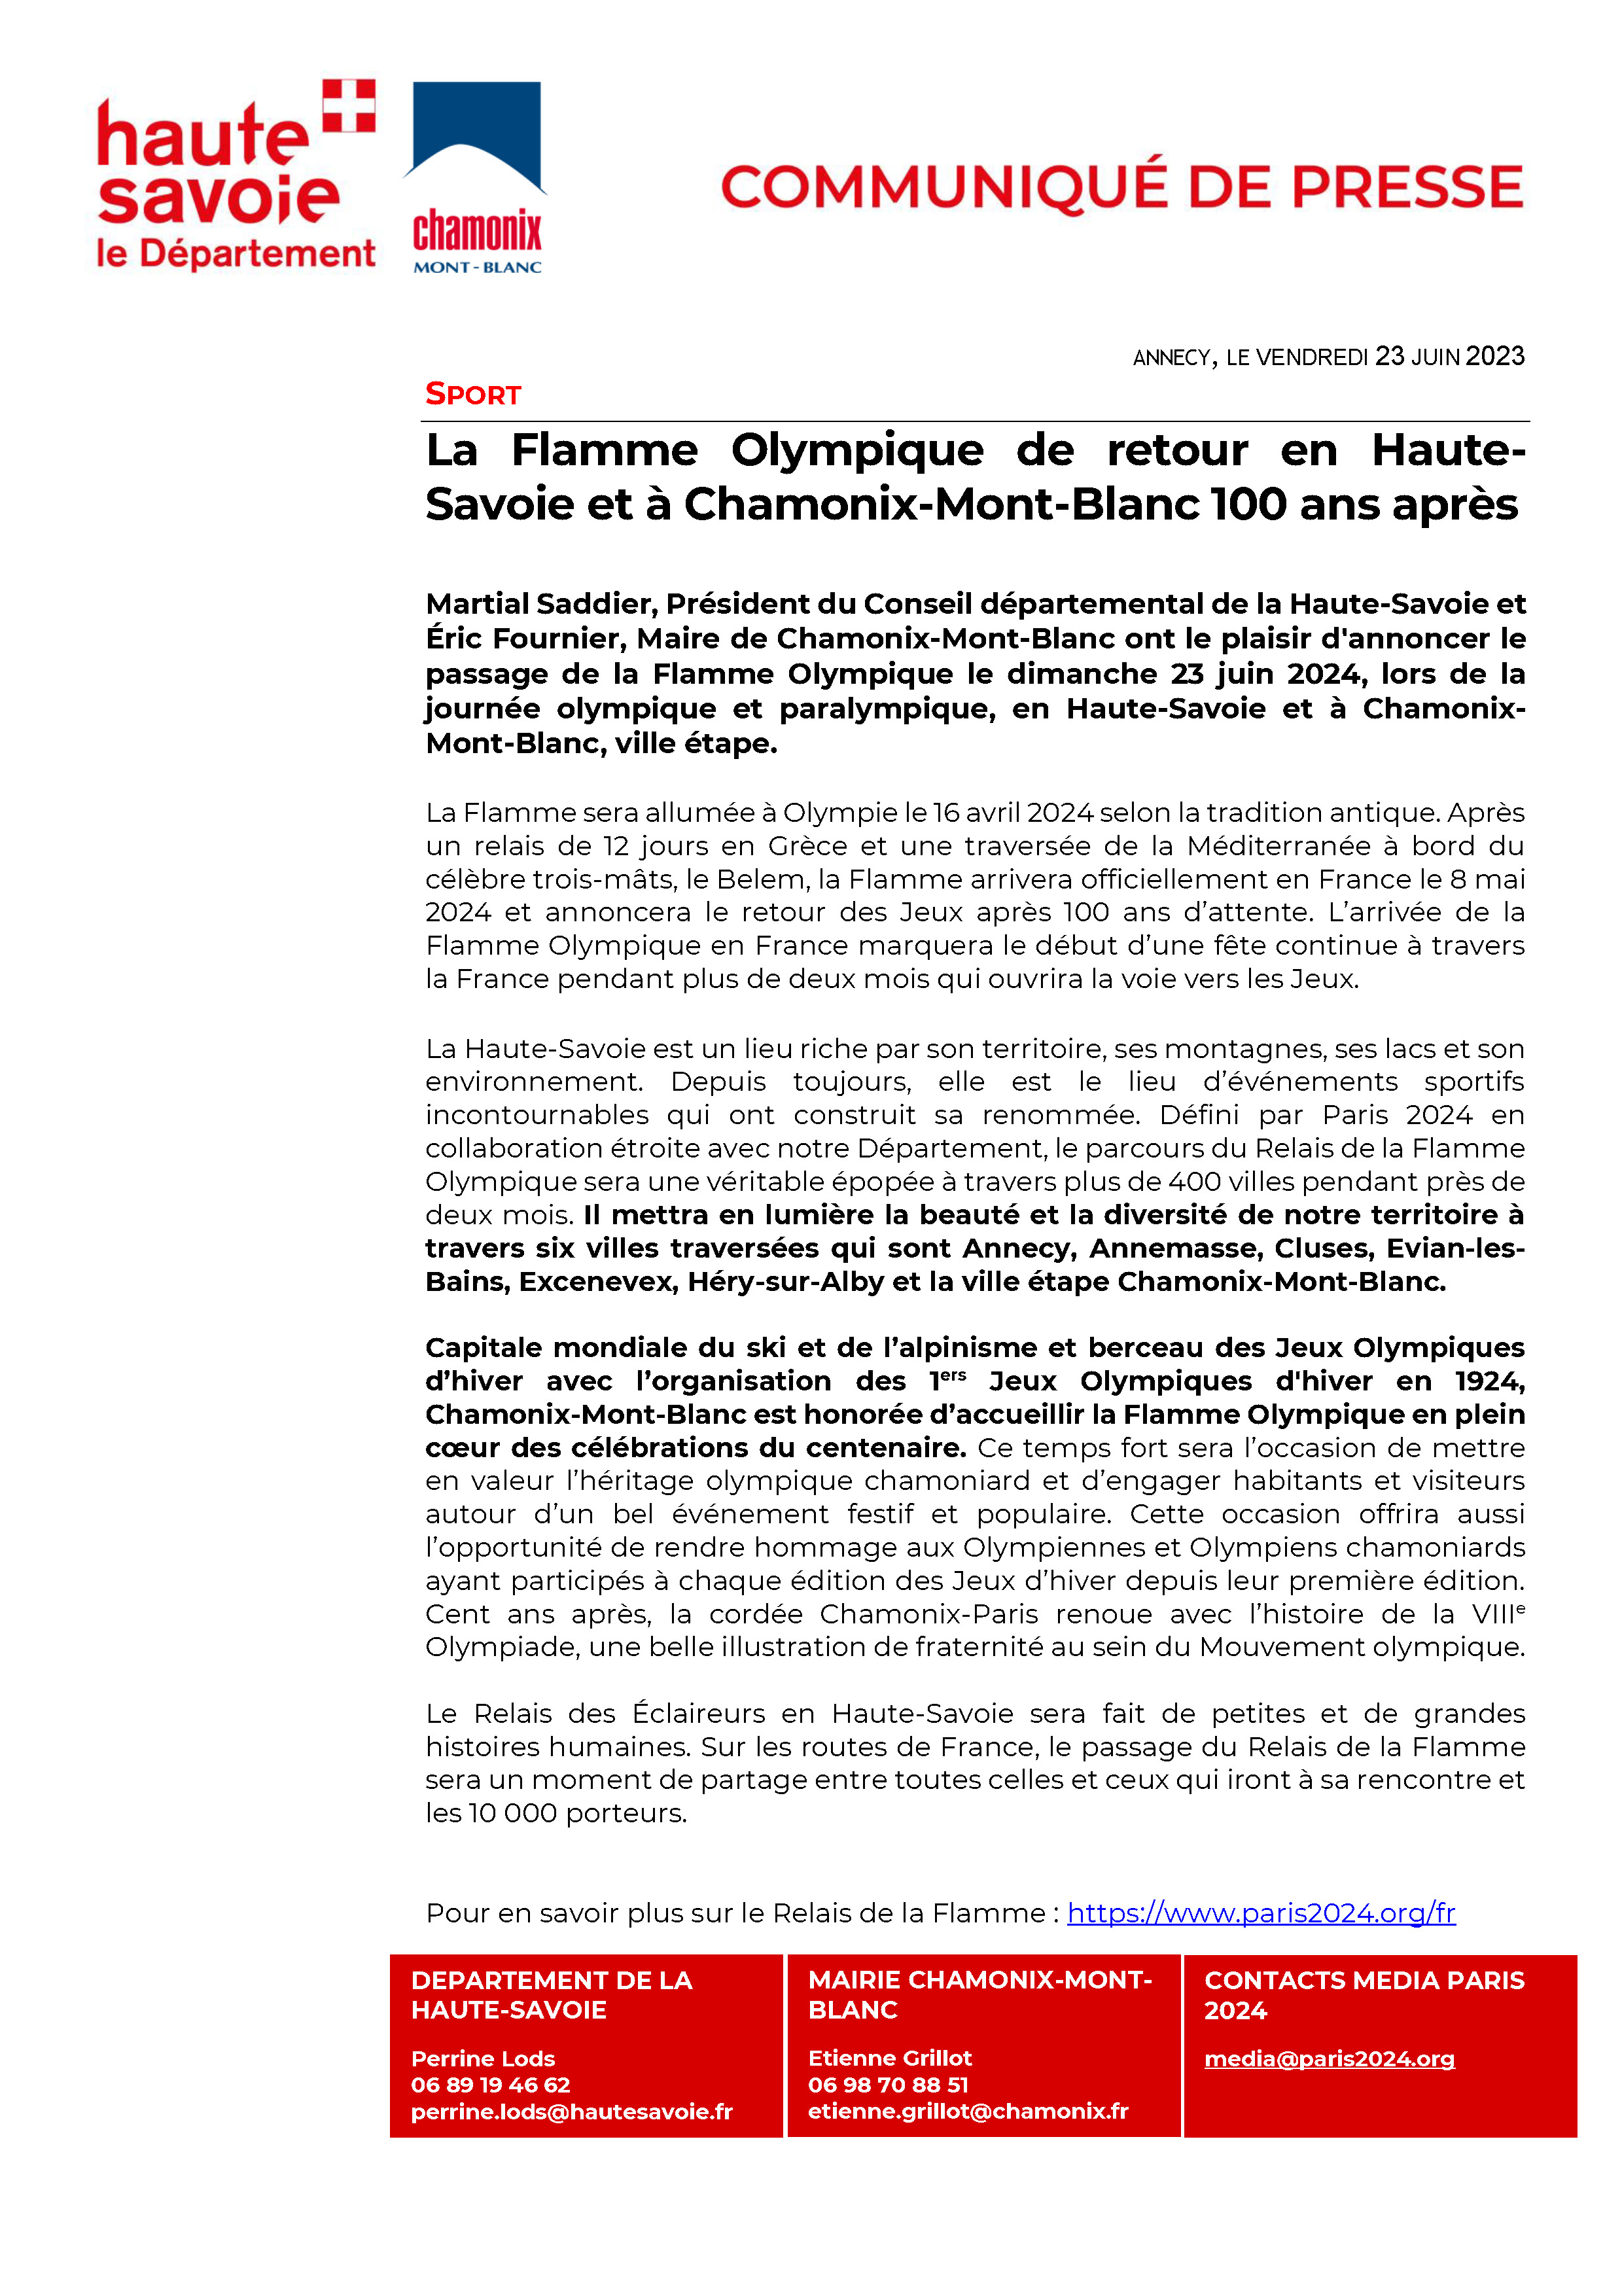 Communiqué de presse relai de la flamme à Chamonix-Mon-Blanc